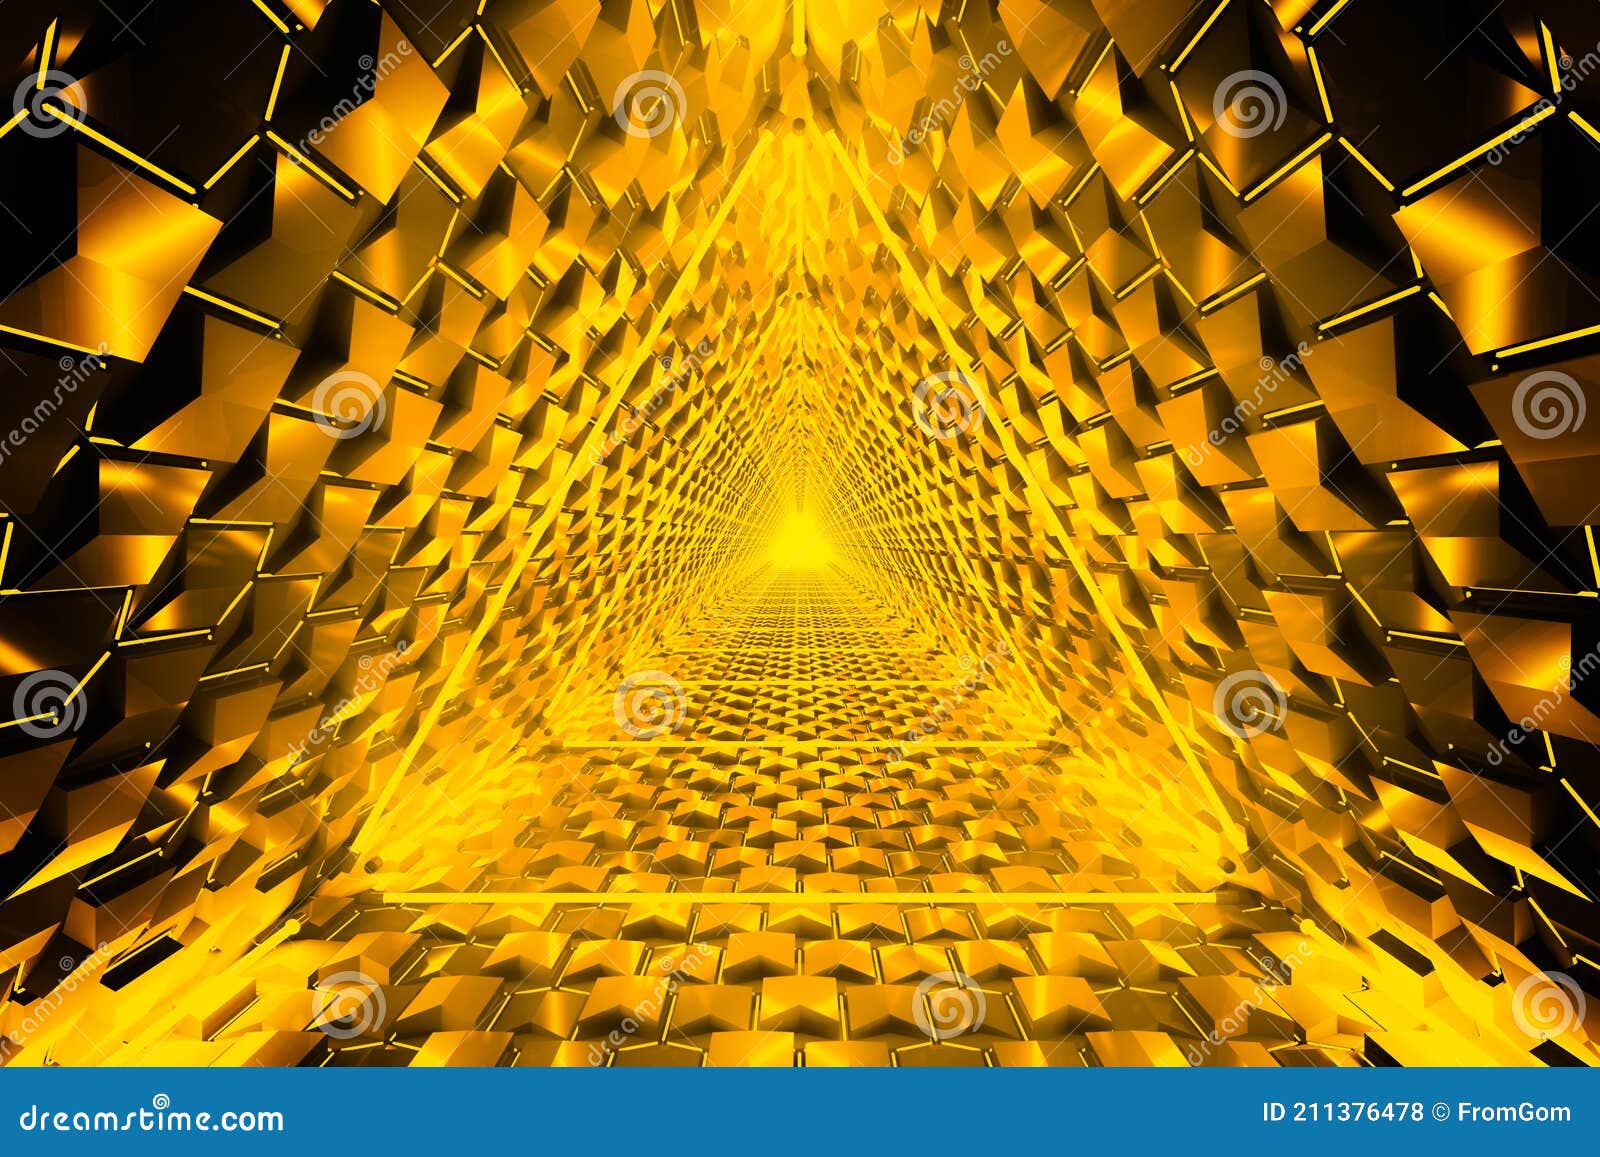 Hiệu ứng đèn neon tam giác vàng có đường sáng lấp lánh sẽ làm cho màn hình của bạn trở nên sống động và vô cùng ấn tượng. Sự kết hợp giữa những đường nét và ánh sáng phản chiếu sẽ tạo ra những hình ảnh tuyệt đẹp và đẳng cấp. Hãy cảm nhận nhịp điệu độc đáo và mẫu hình đầy sáng tạo trong hiệu ứng này.